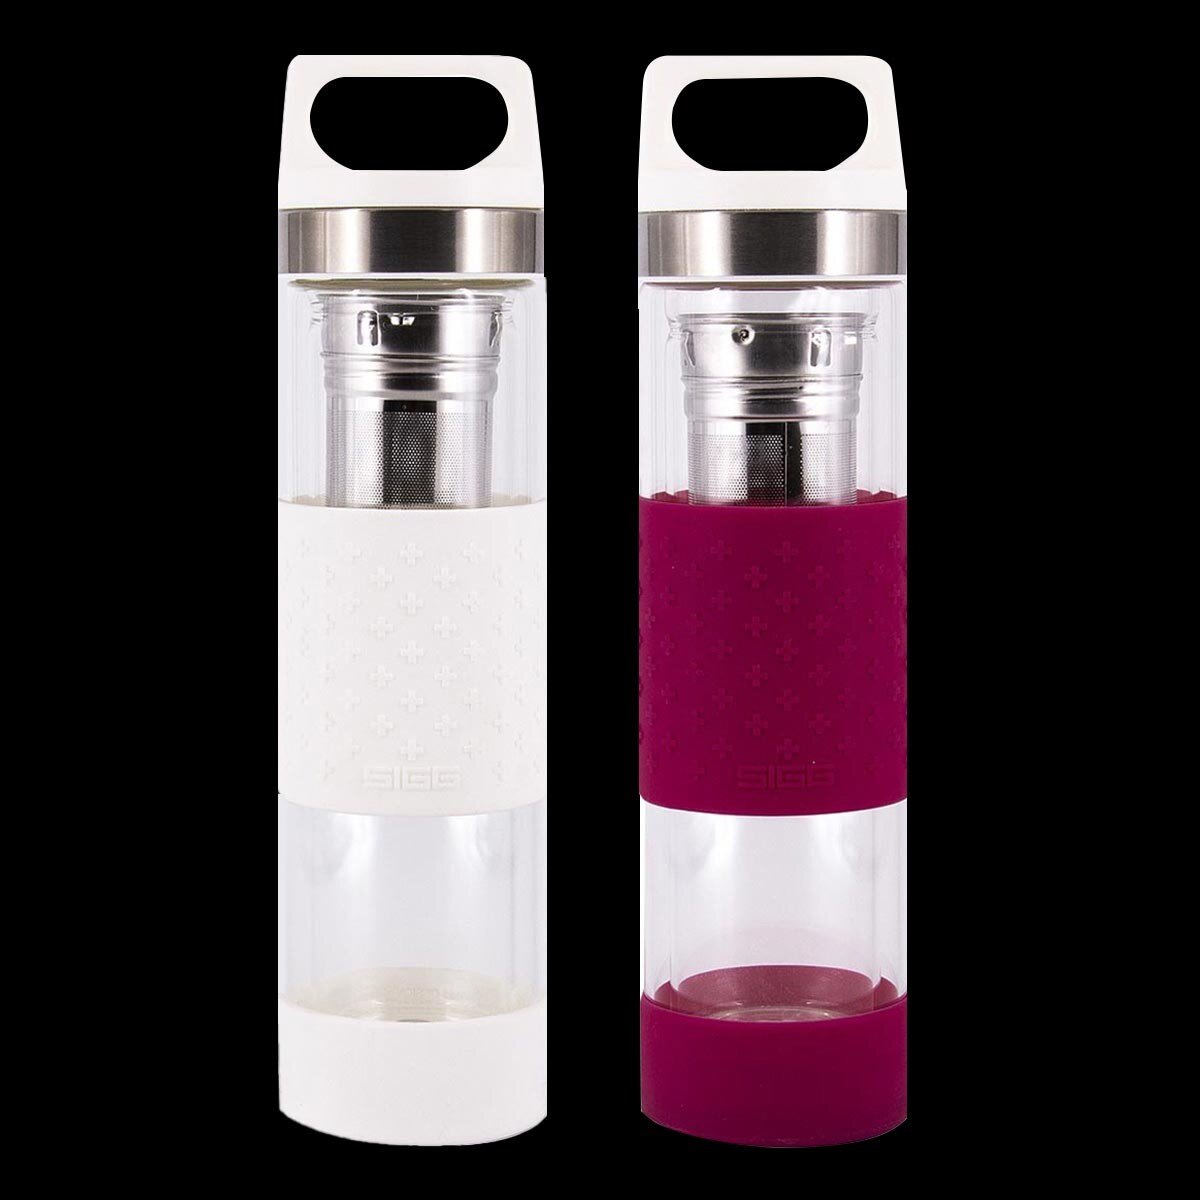 SIGG 雙層玻璃水瓶 400毫升 X 2件組 白 + 莓紅